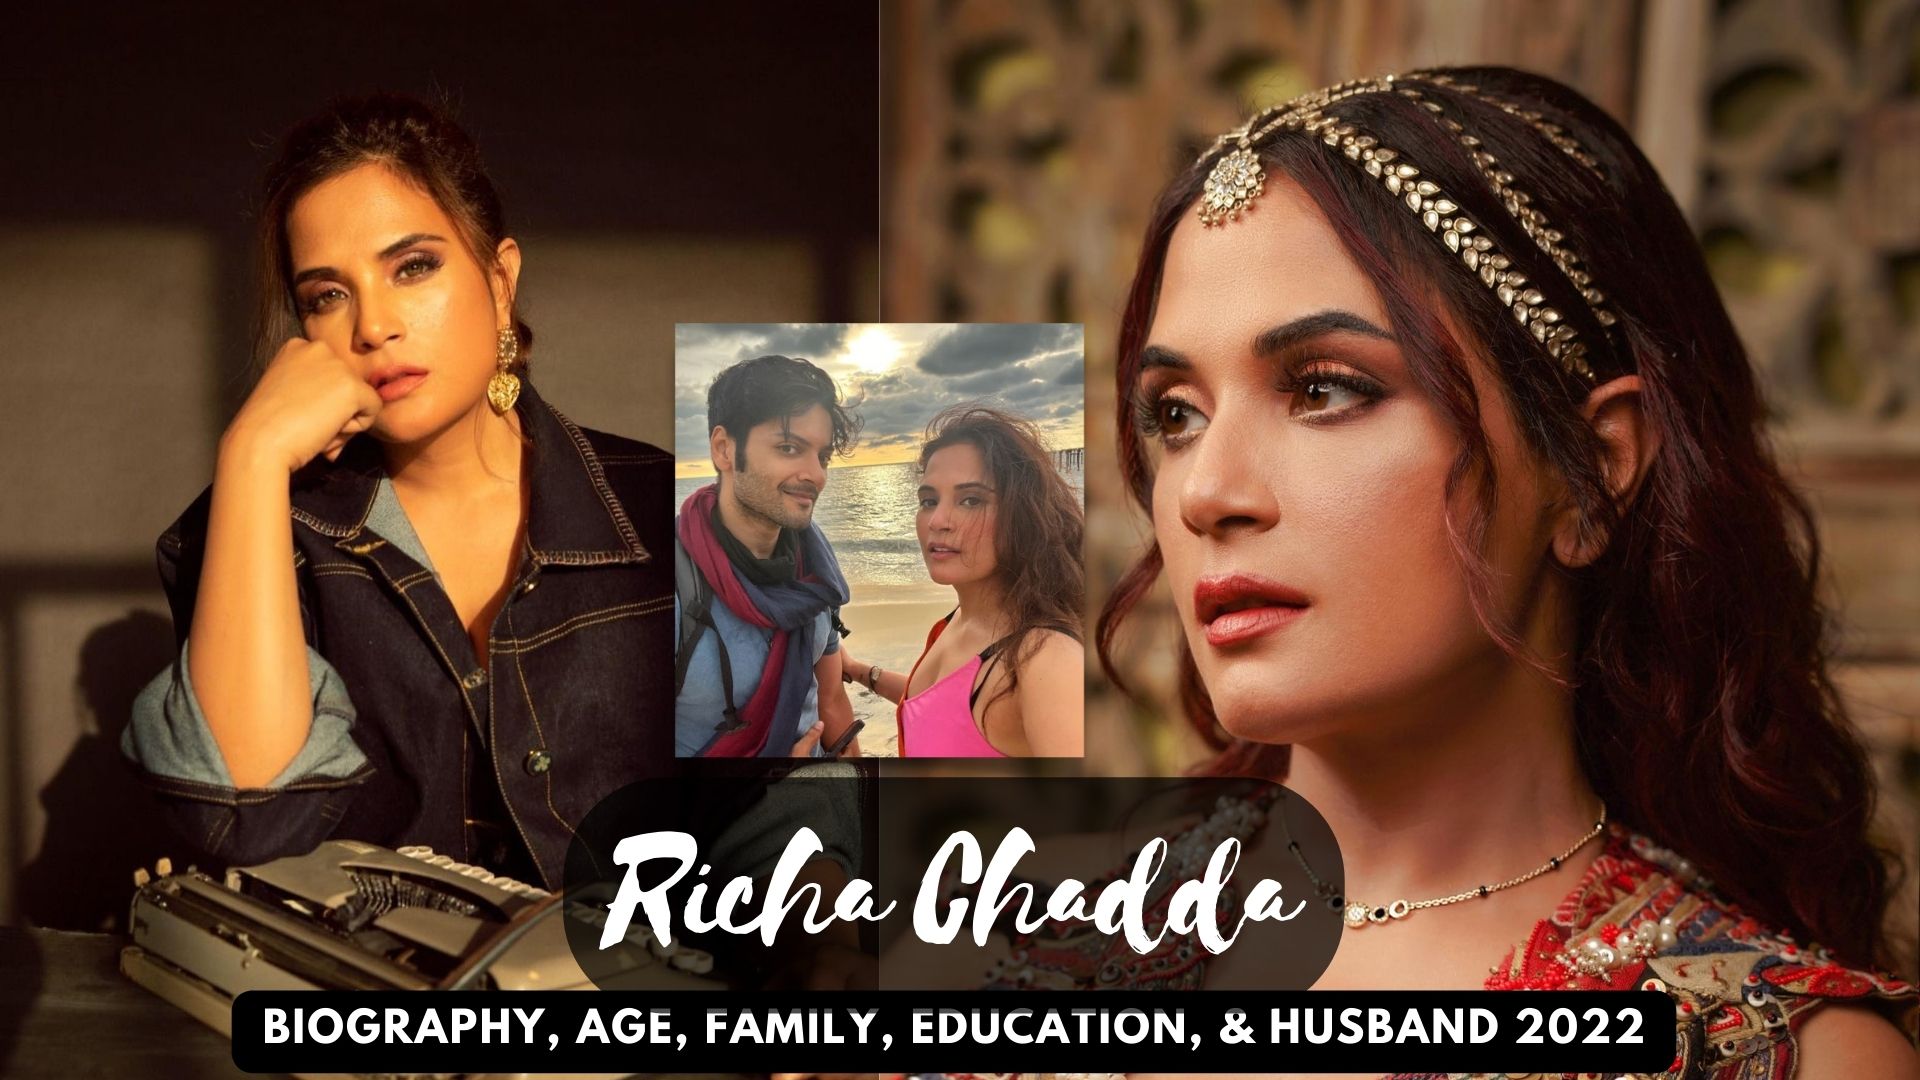 Richa Chadda Biography,  Age, Family, Education, & Husband 2022